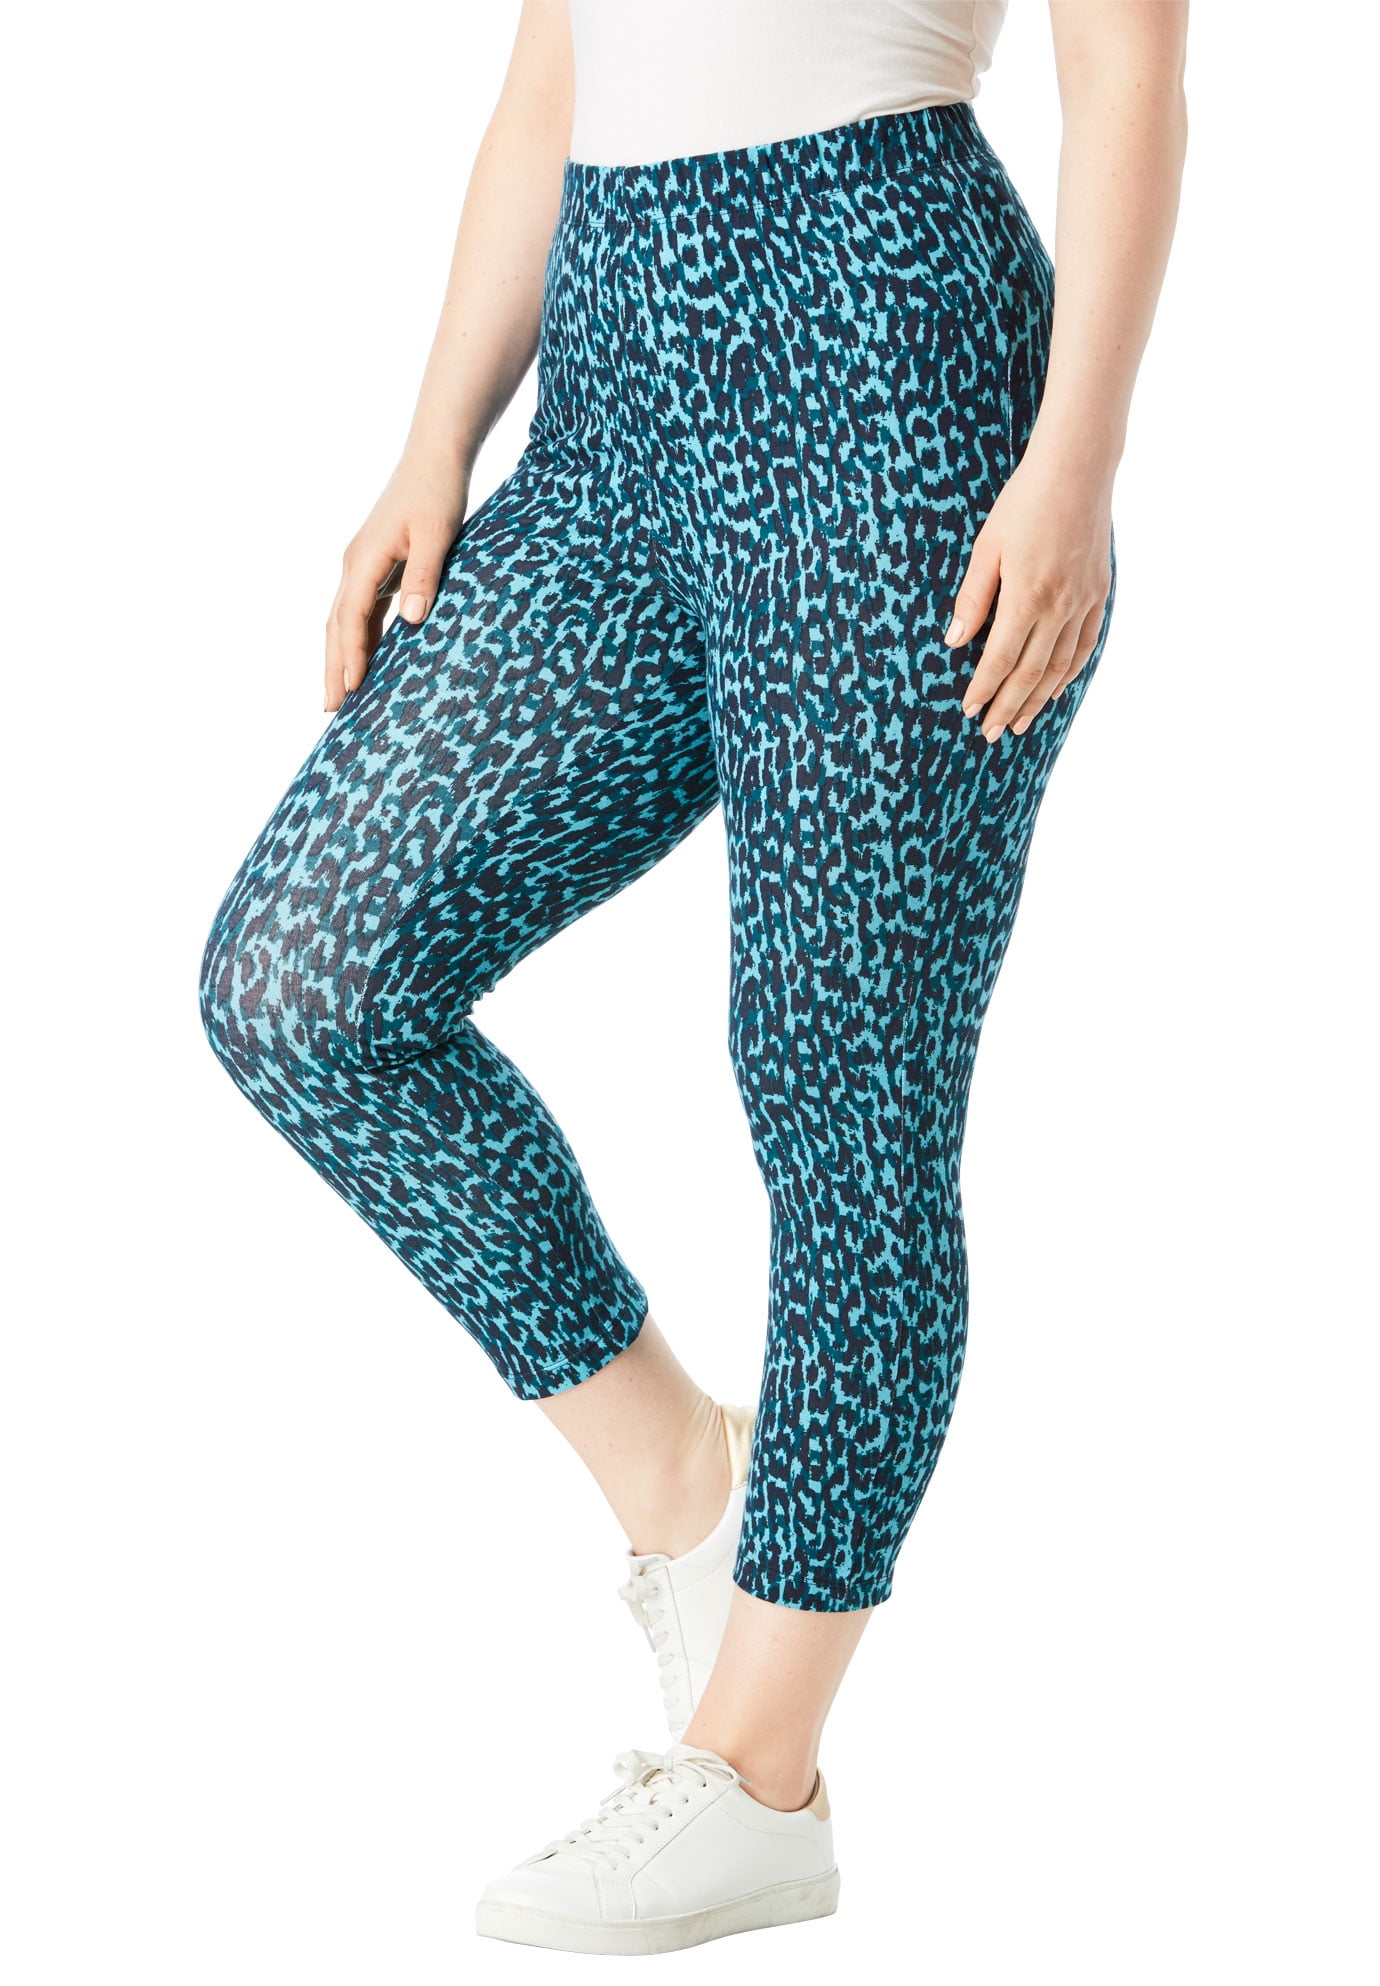 Roaman's Women's Plus Size Essential Stretch Capri Legging Activewear Workout Yoga Pants